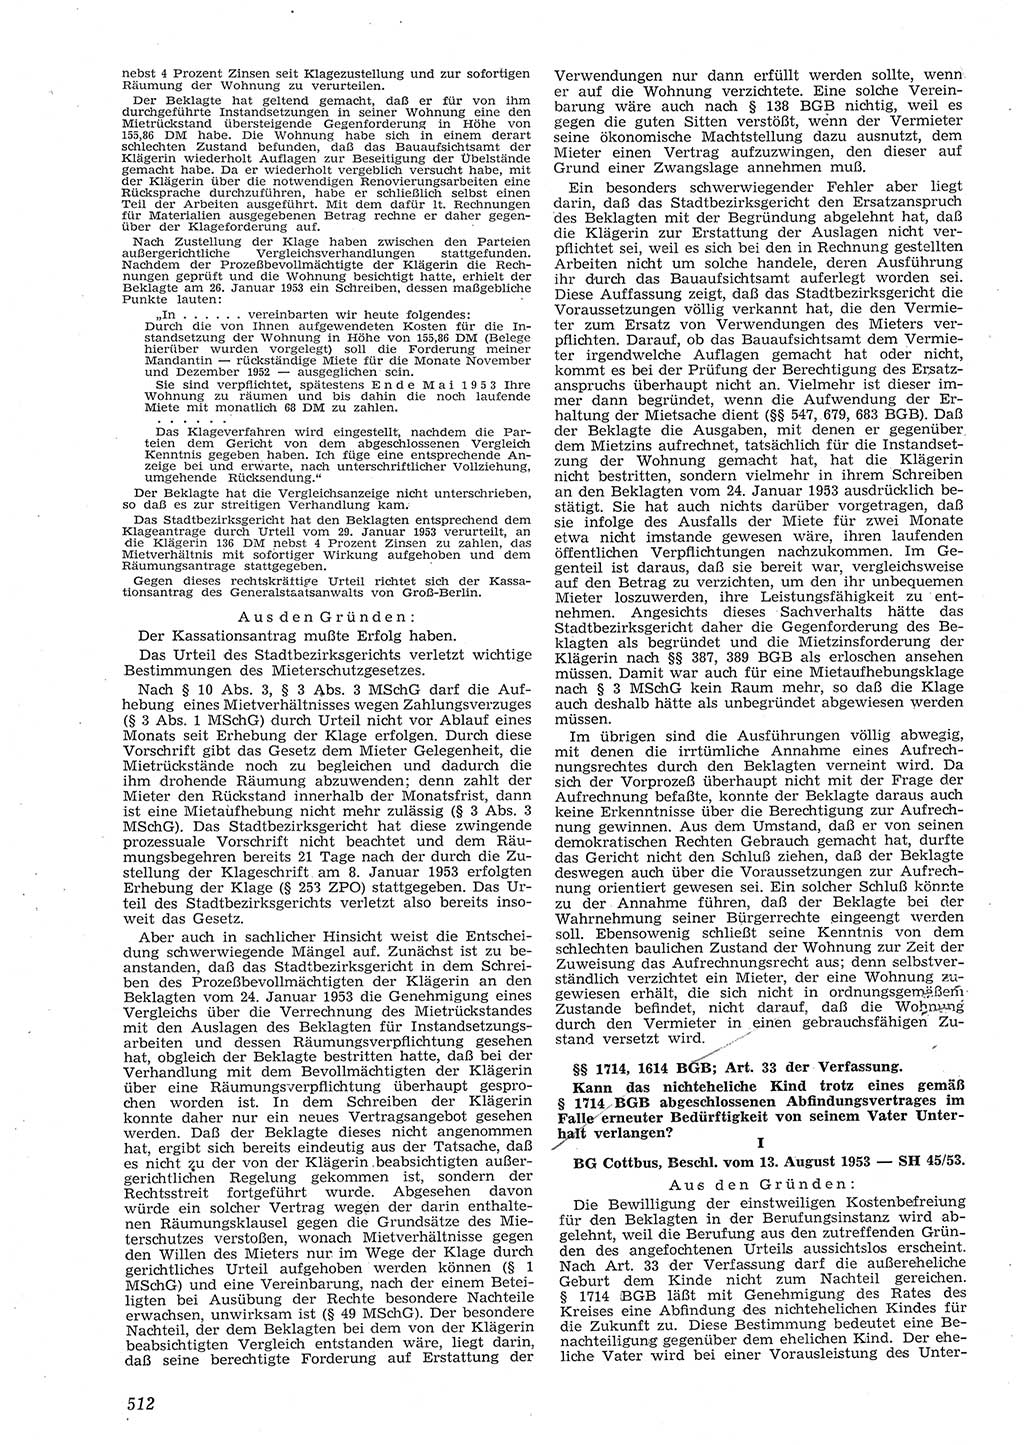 Neue Justiz (NJ), Zeitschrift für Recht und Rechtswissenschaft [Deutsche Demokratische Republik (DDR)], 8. Jahrgang 1954, Seite 512 (NJ DDR 1954, S. 512)